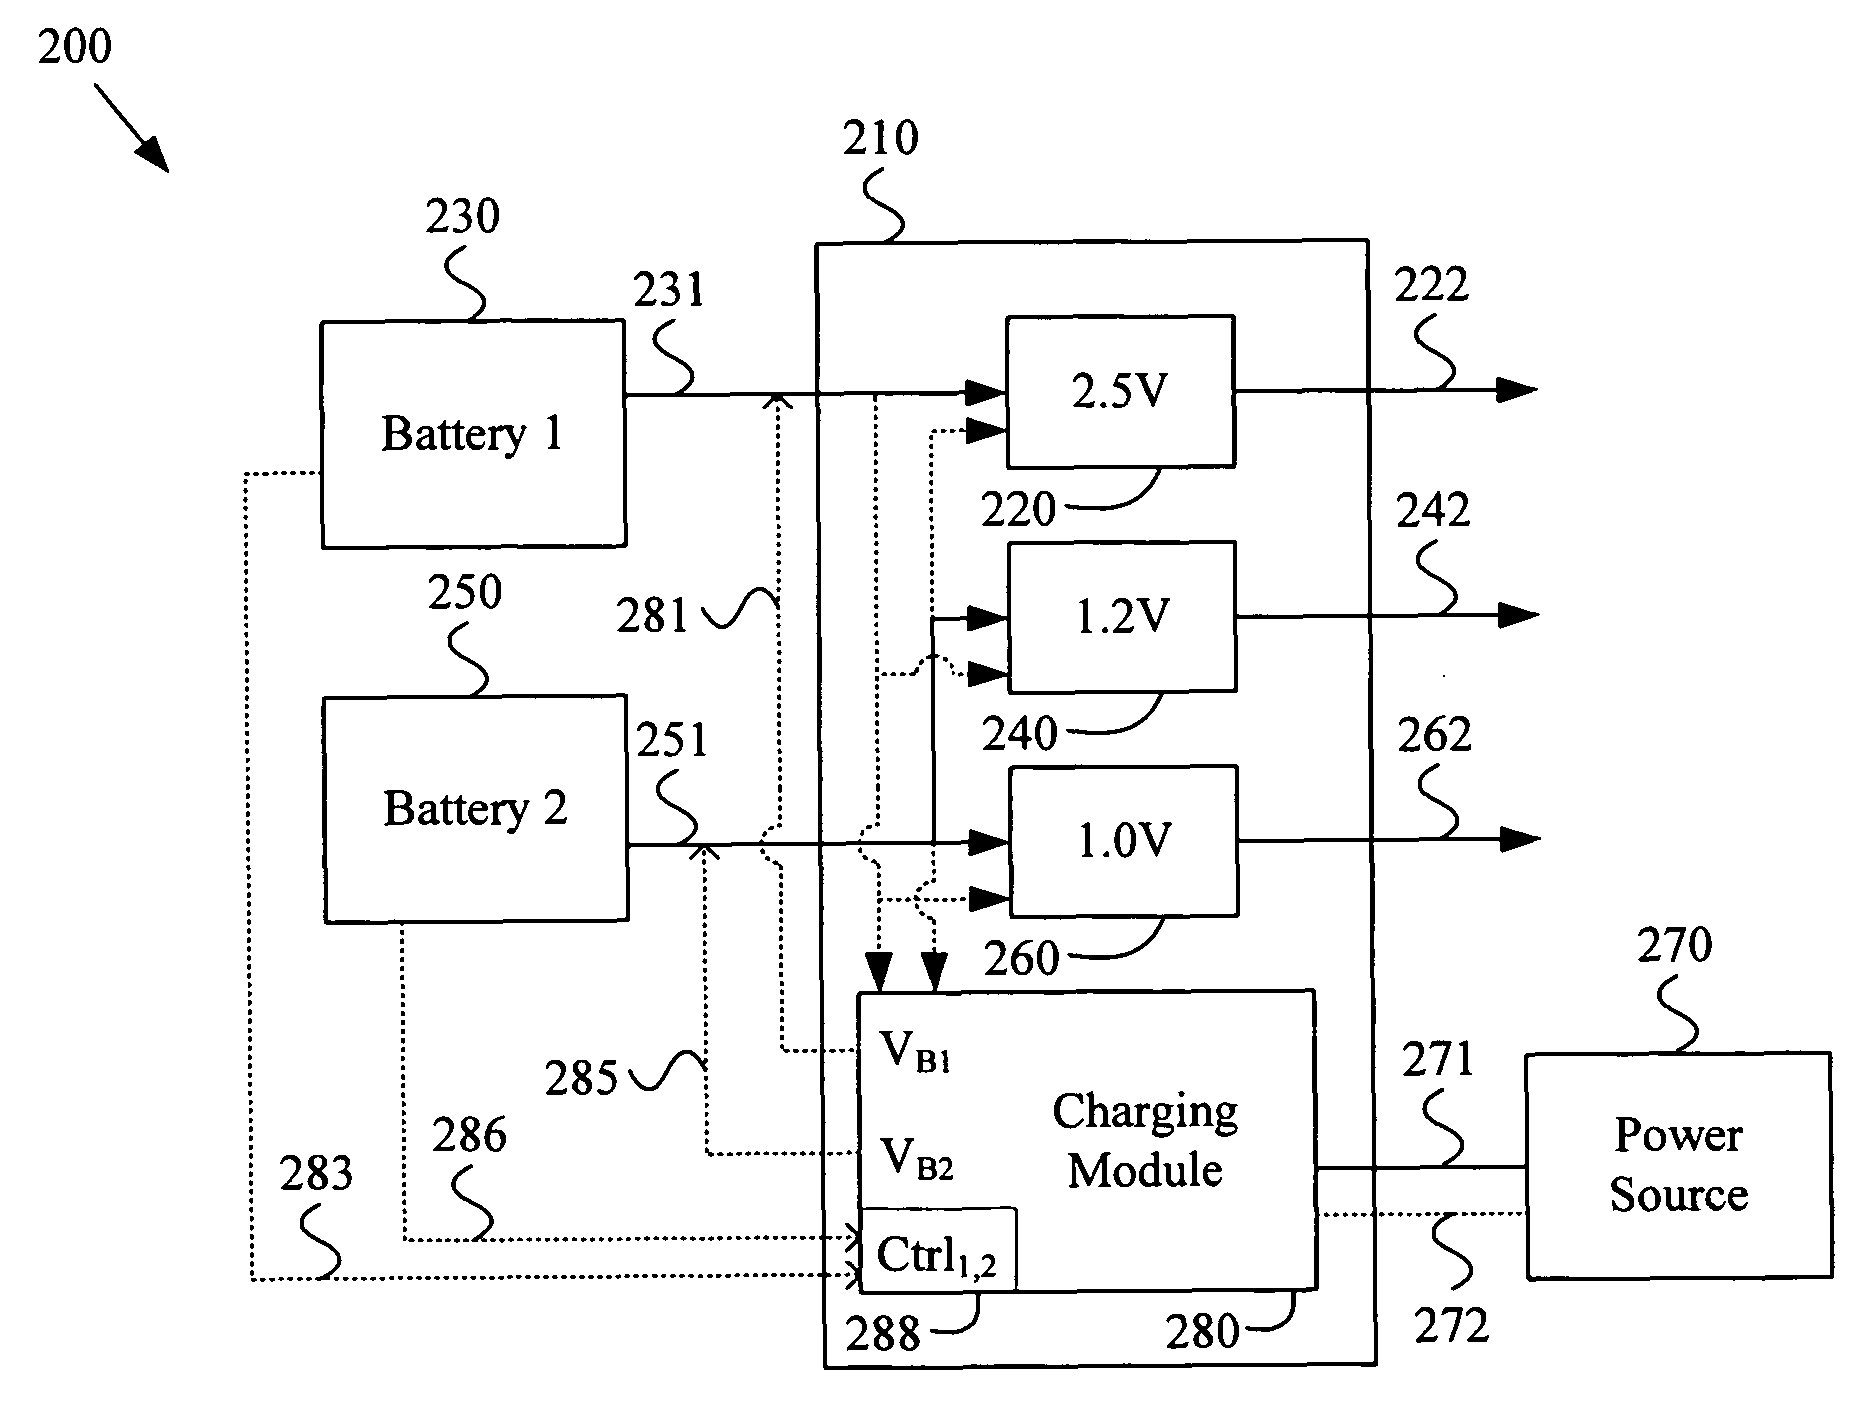 Multi-voltage multi-battery power management unit